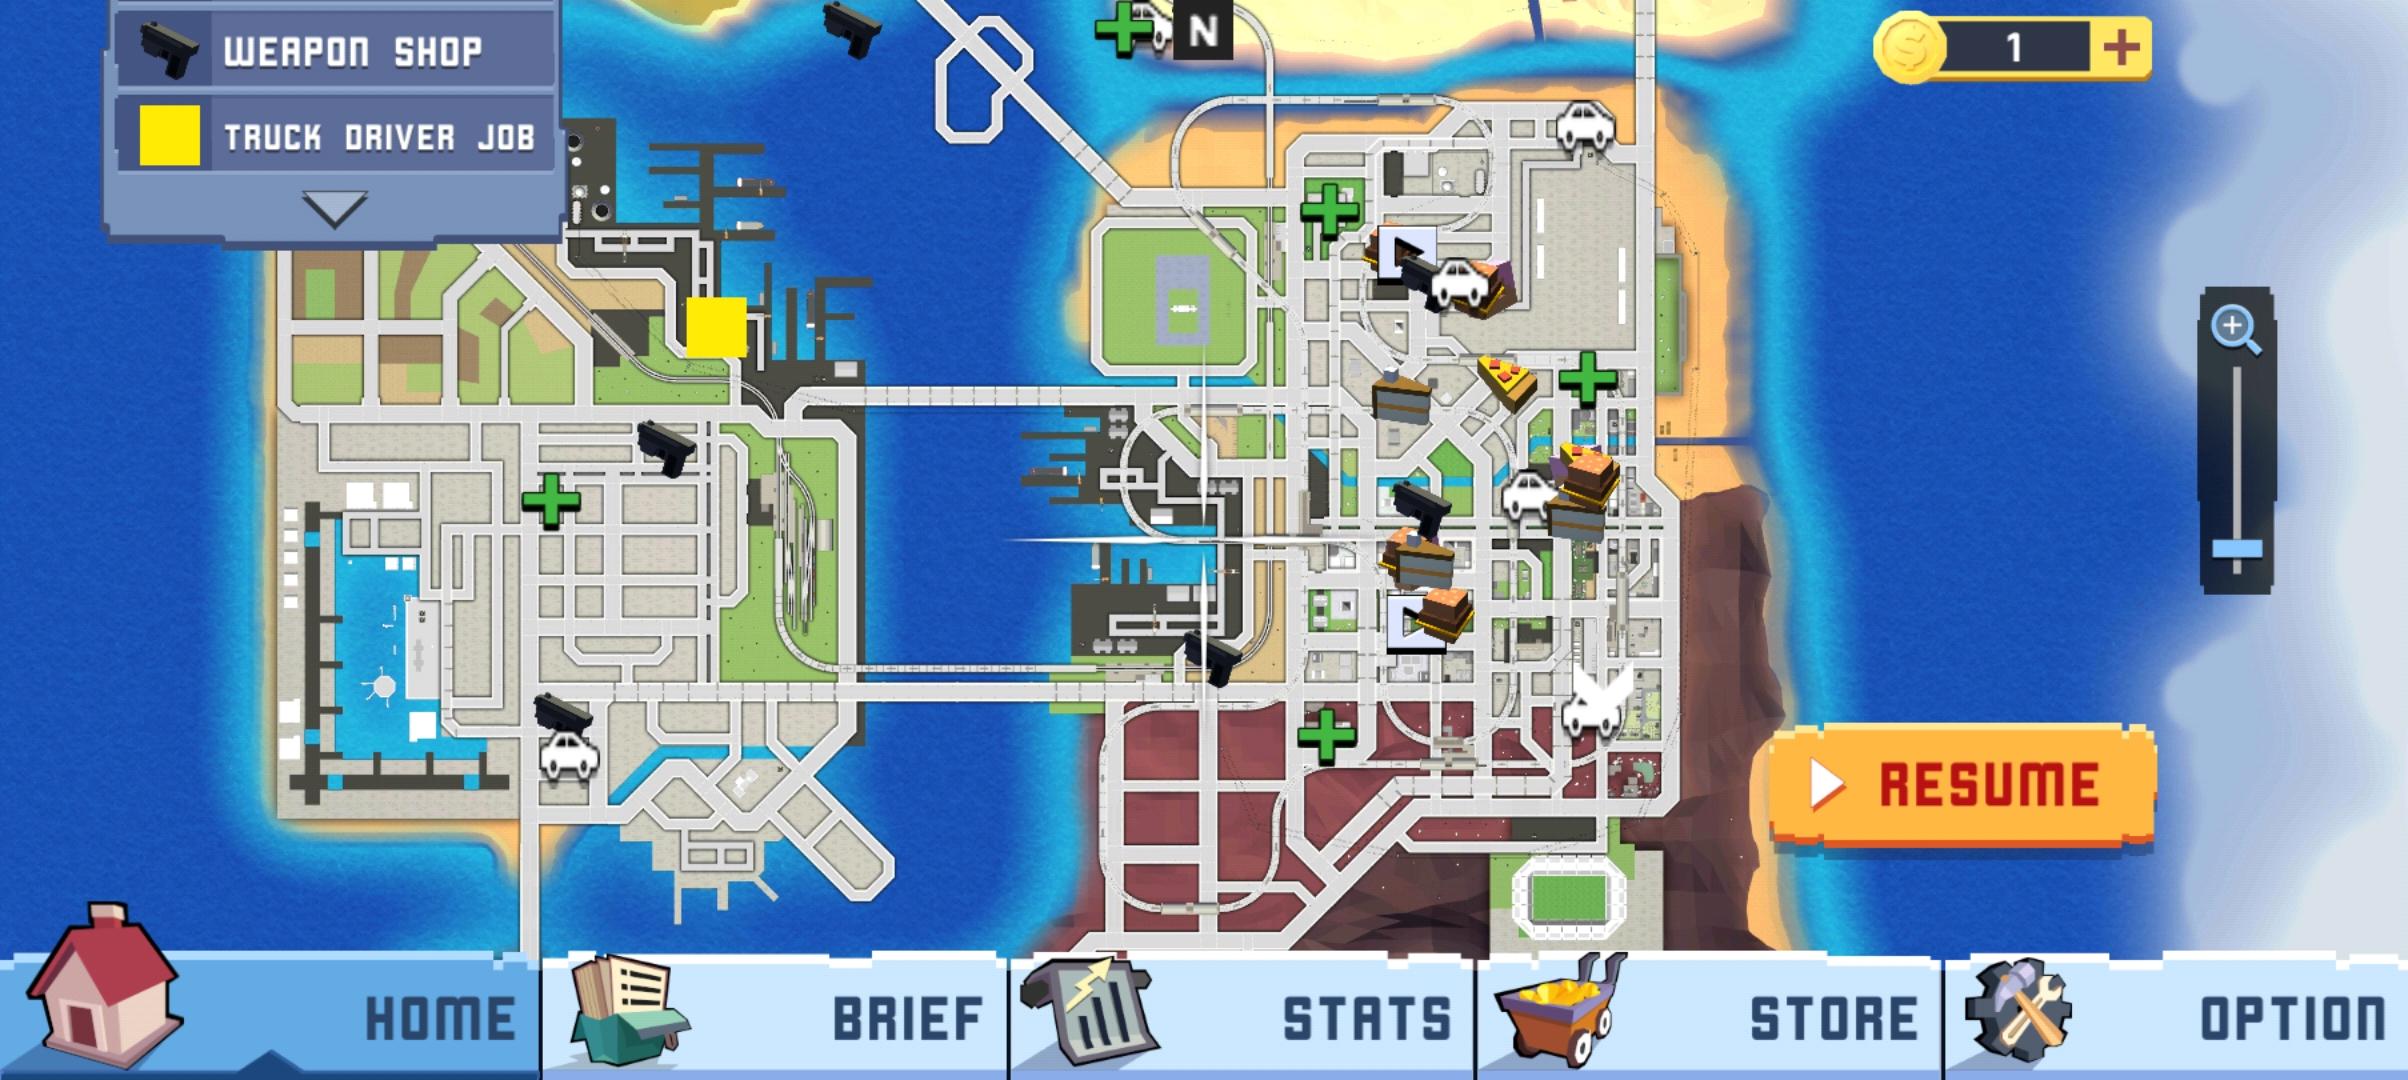 Identity Forwarded: Karma Game screenshot game